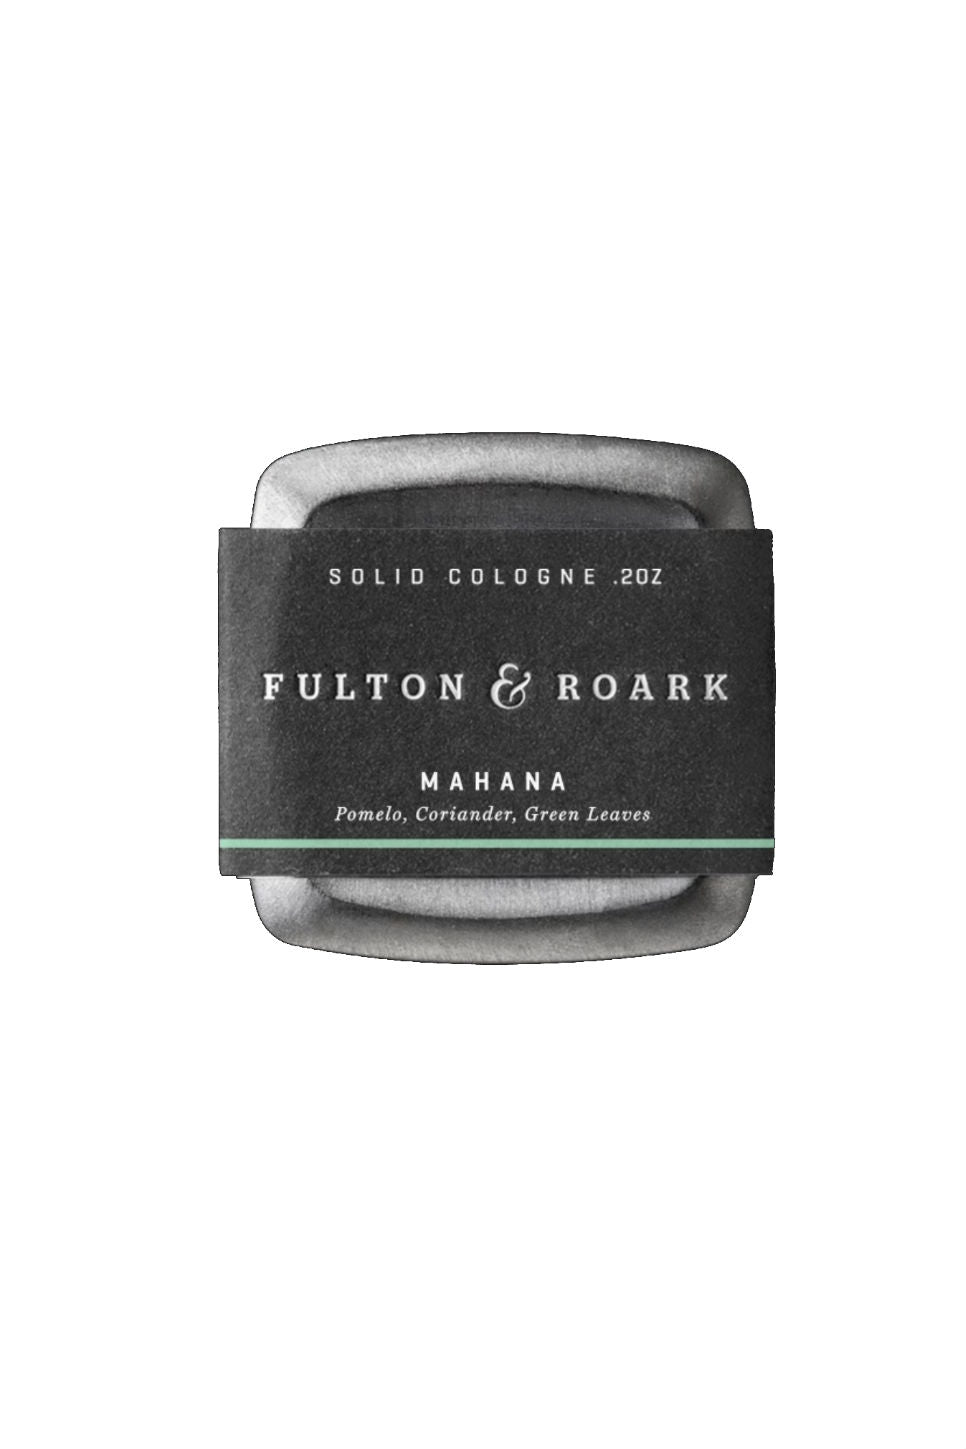 Fulton & Roark - Mahana Cologne